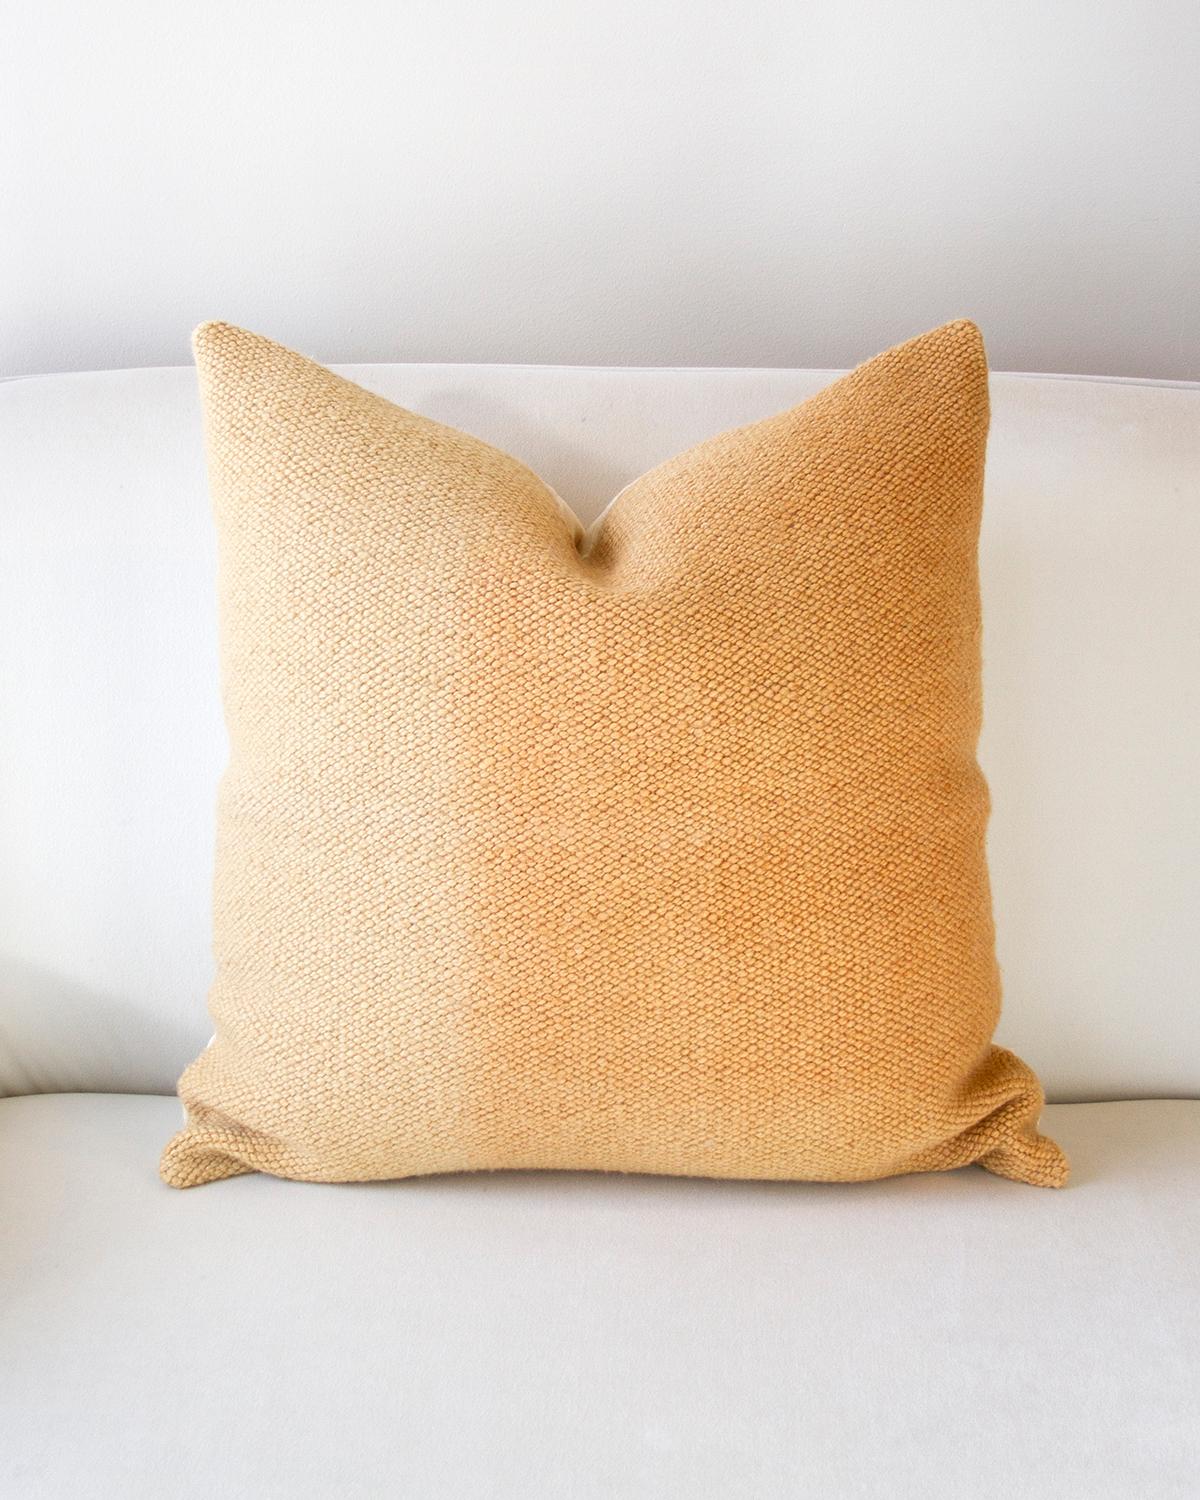 Organic Modern Matiz Gold Throw Pillow Handwoven Textured Sheep Wool For Sale